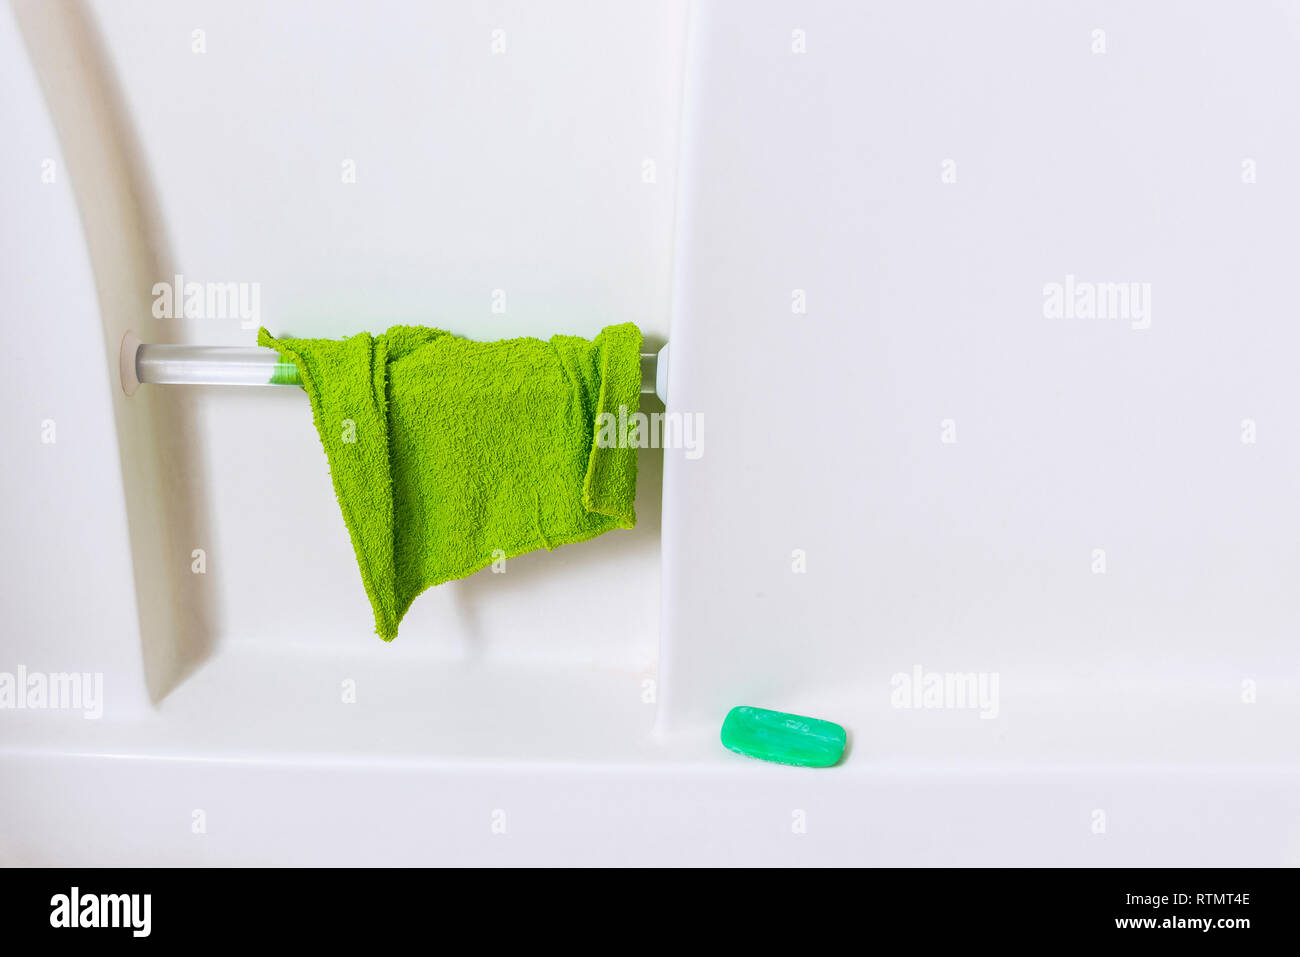 Horizontale Nahaufnahme der Mauer von einer Weißen Wanne. Grüne Waschlappen hängen von Handlauf und grüne Seife im Regal. Viele kopieren. Stockfoto